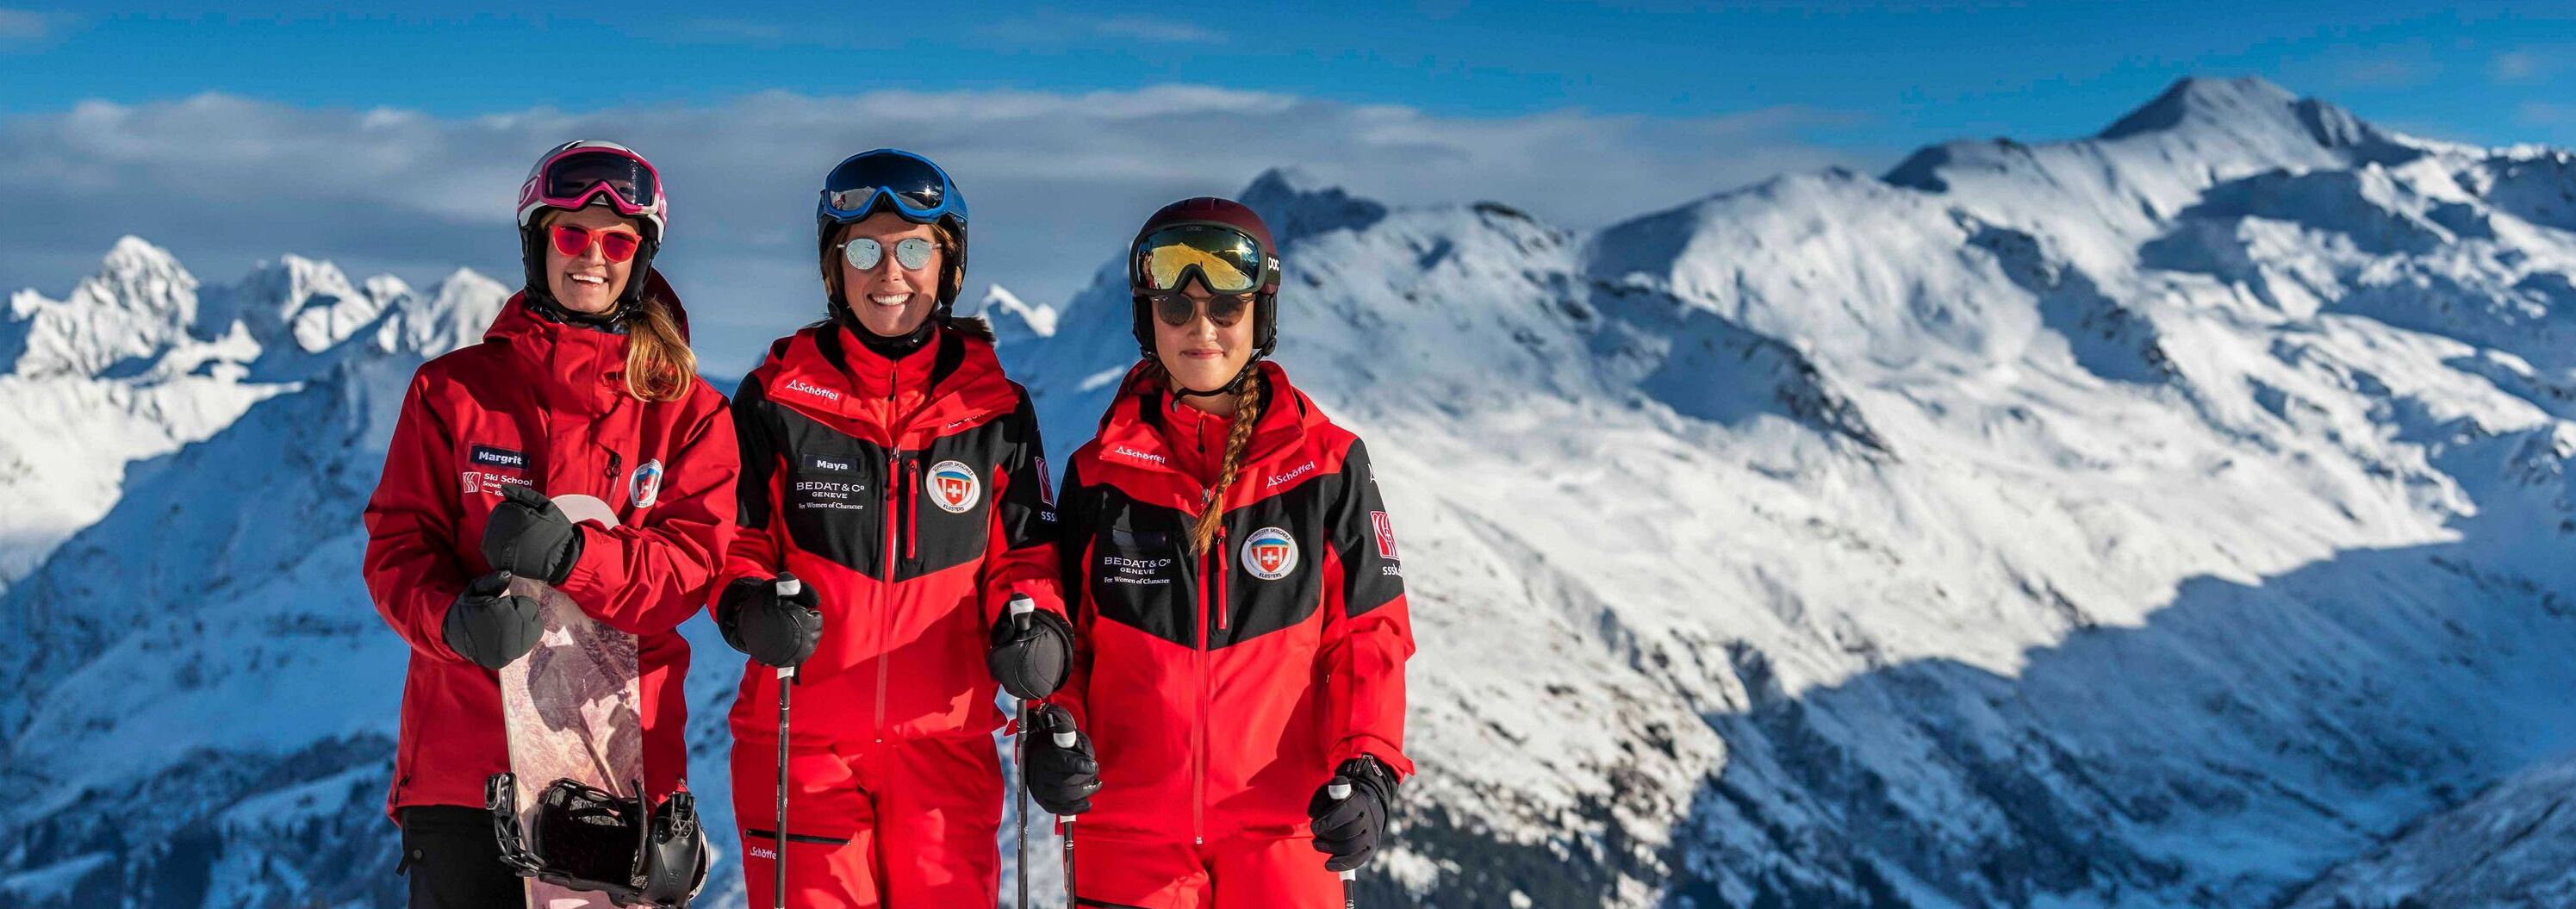 Skilehrer und Snowboardlehrer der Skischule Klosters im Skigebiet Klosters / Davos 